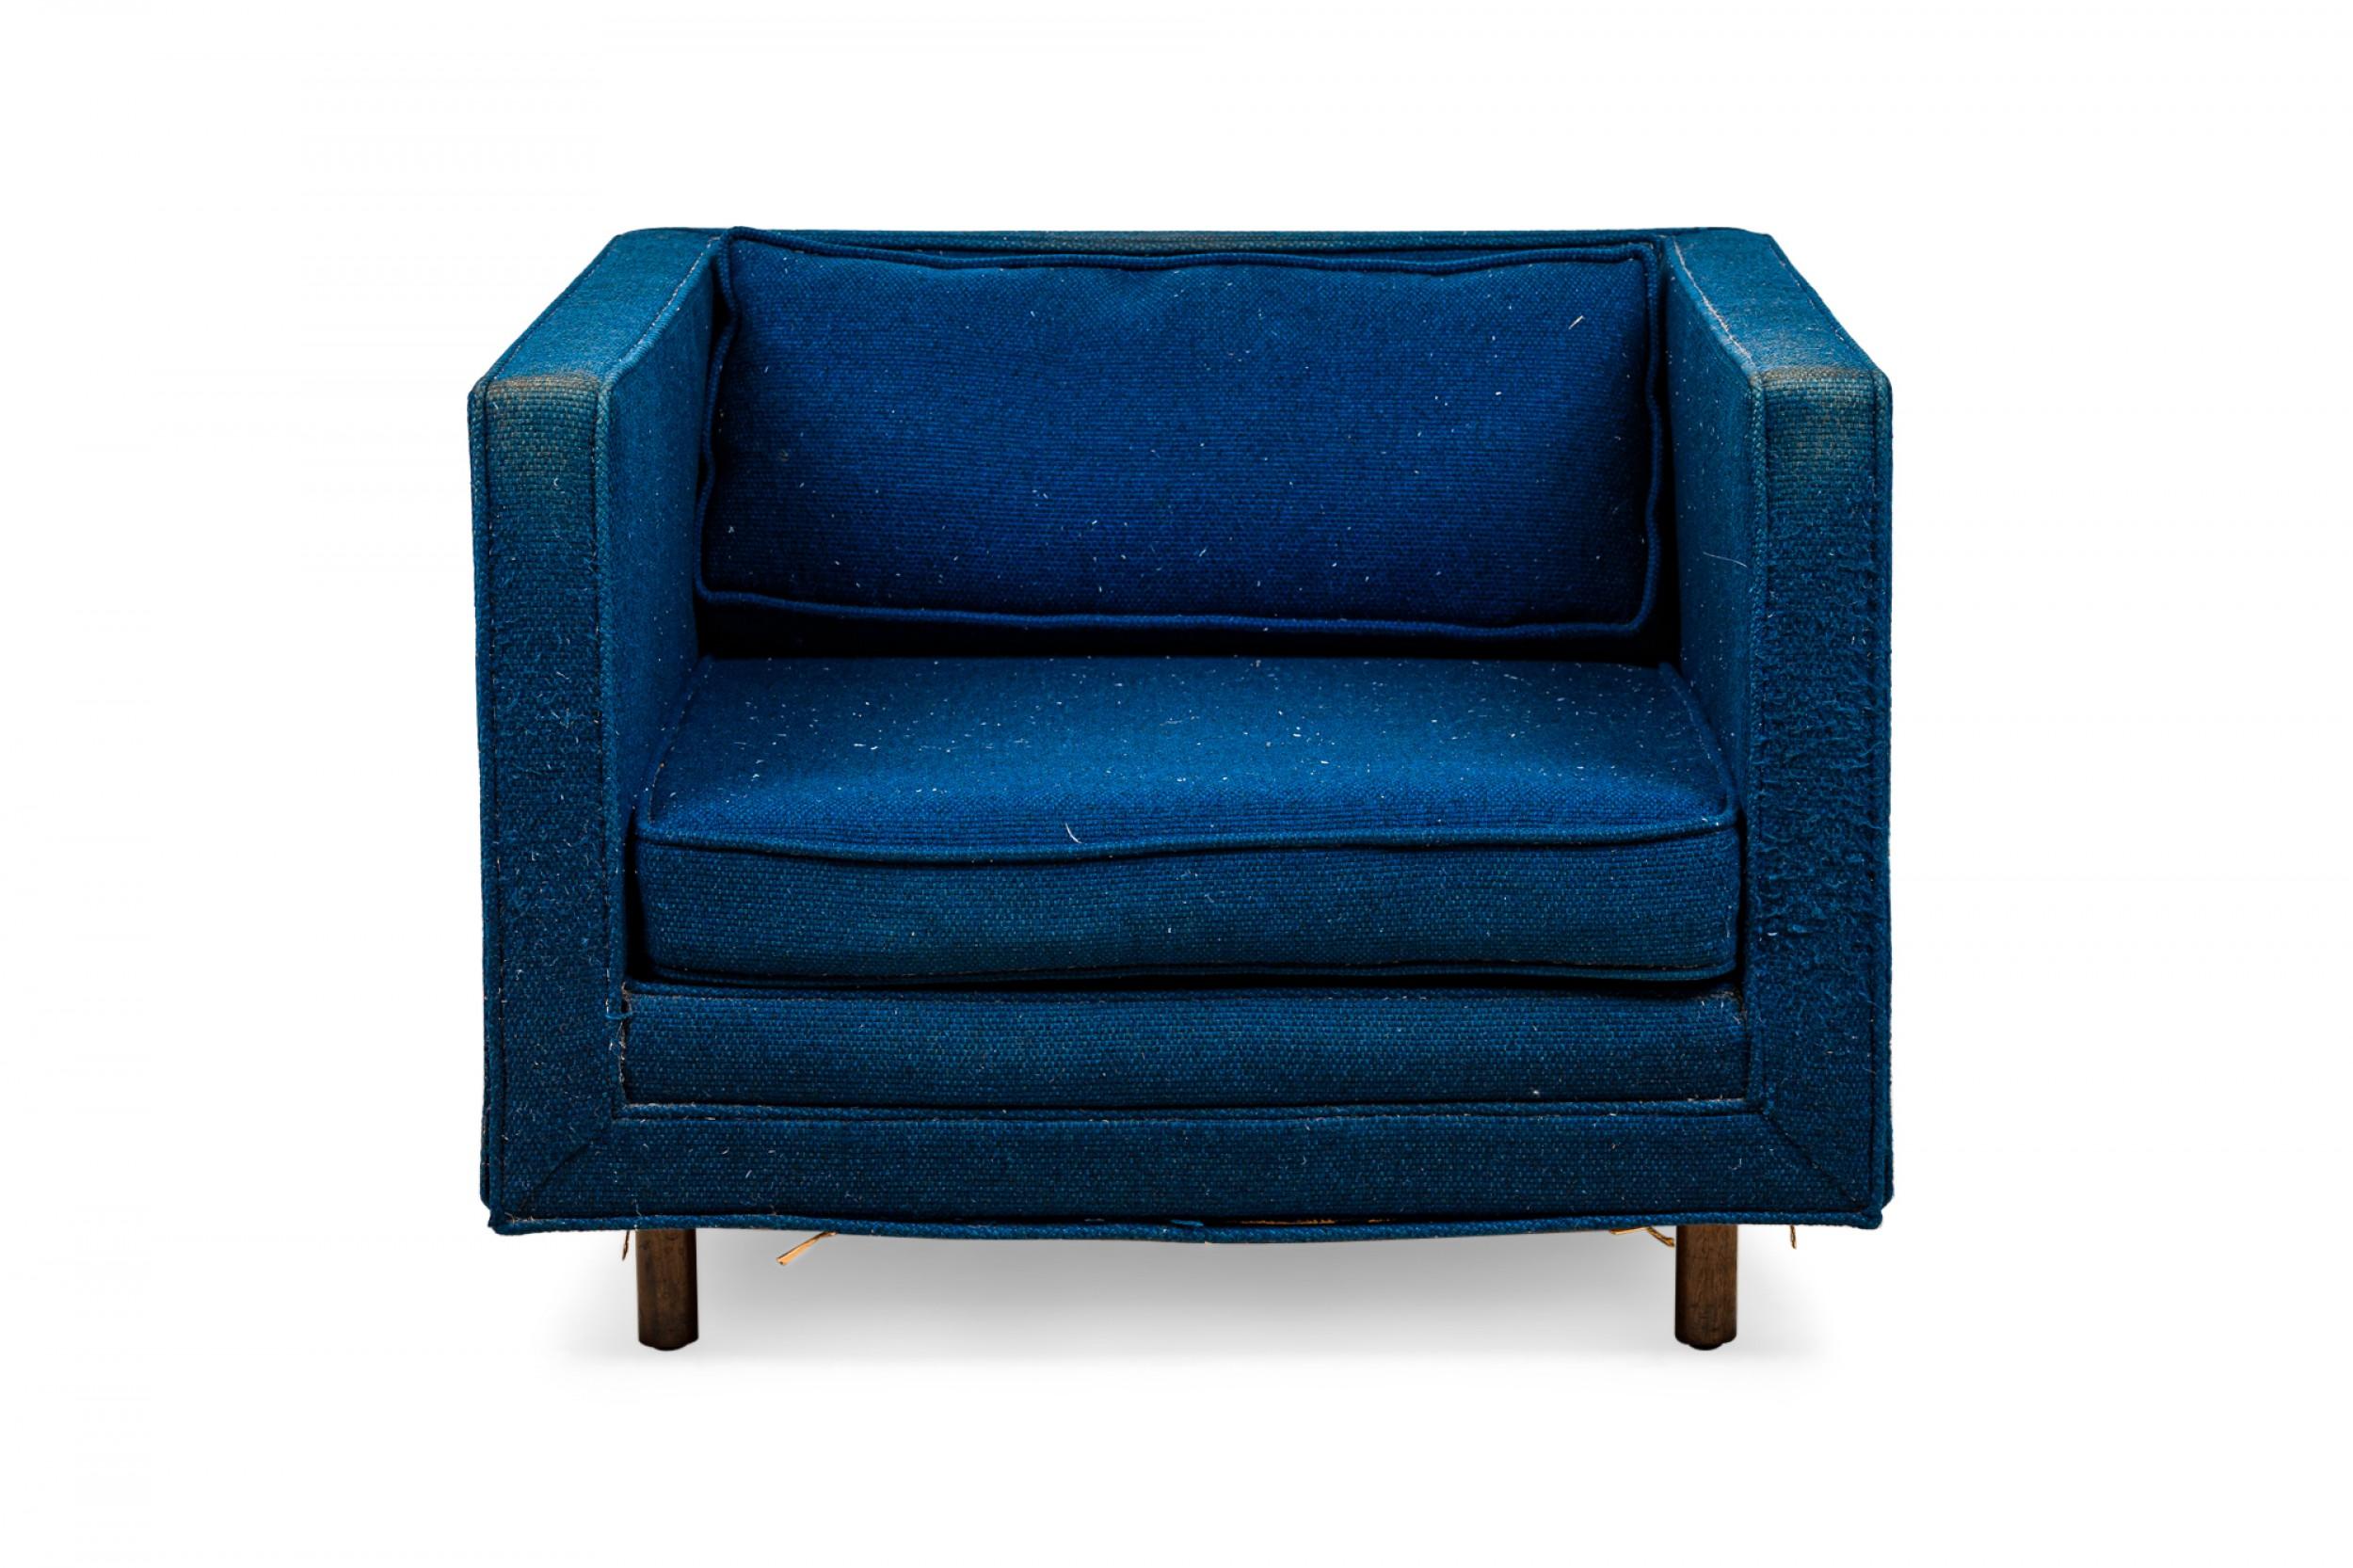 Amerikanischer Mid-Century Lounge-/Sessel in Würfelform mit strukturiertem königsblauem Stoffbezug und passendem abnehmbaren Rückenkissen. (HARVEY PROBBER)(Erhältlich in schwarz: DUF0509B).
 